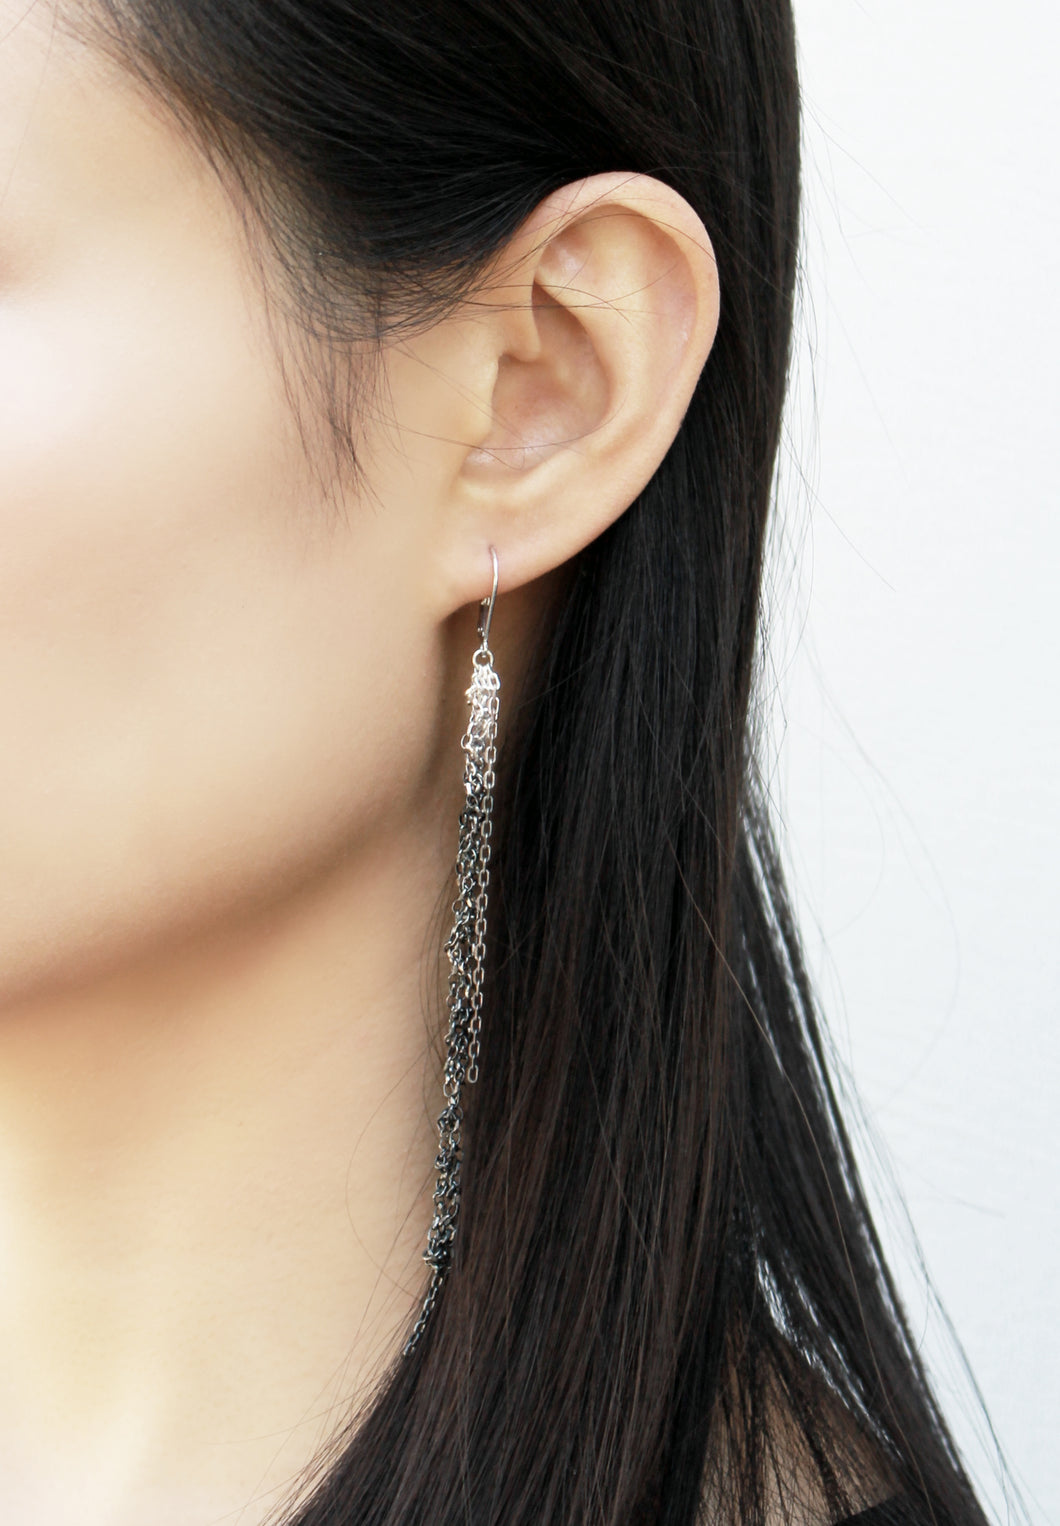 Racimo Silver Earrings - Long Oxidized Silver Earrings, Elegant Drop Earrings - MERCe